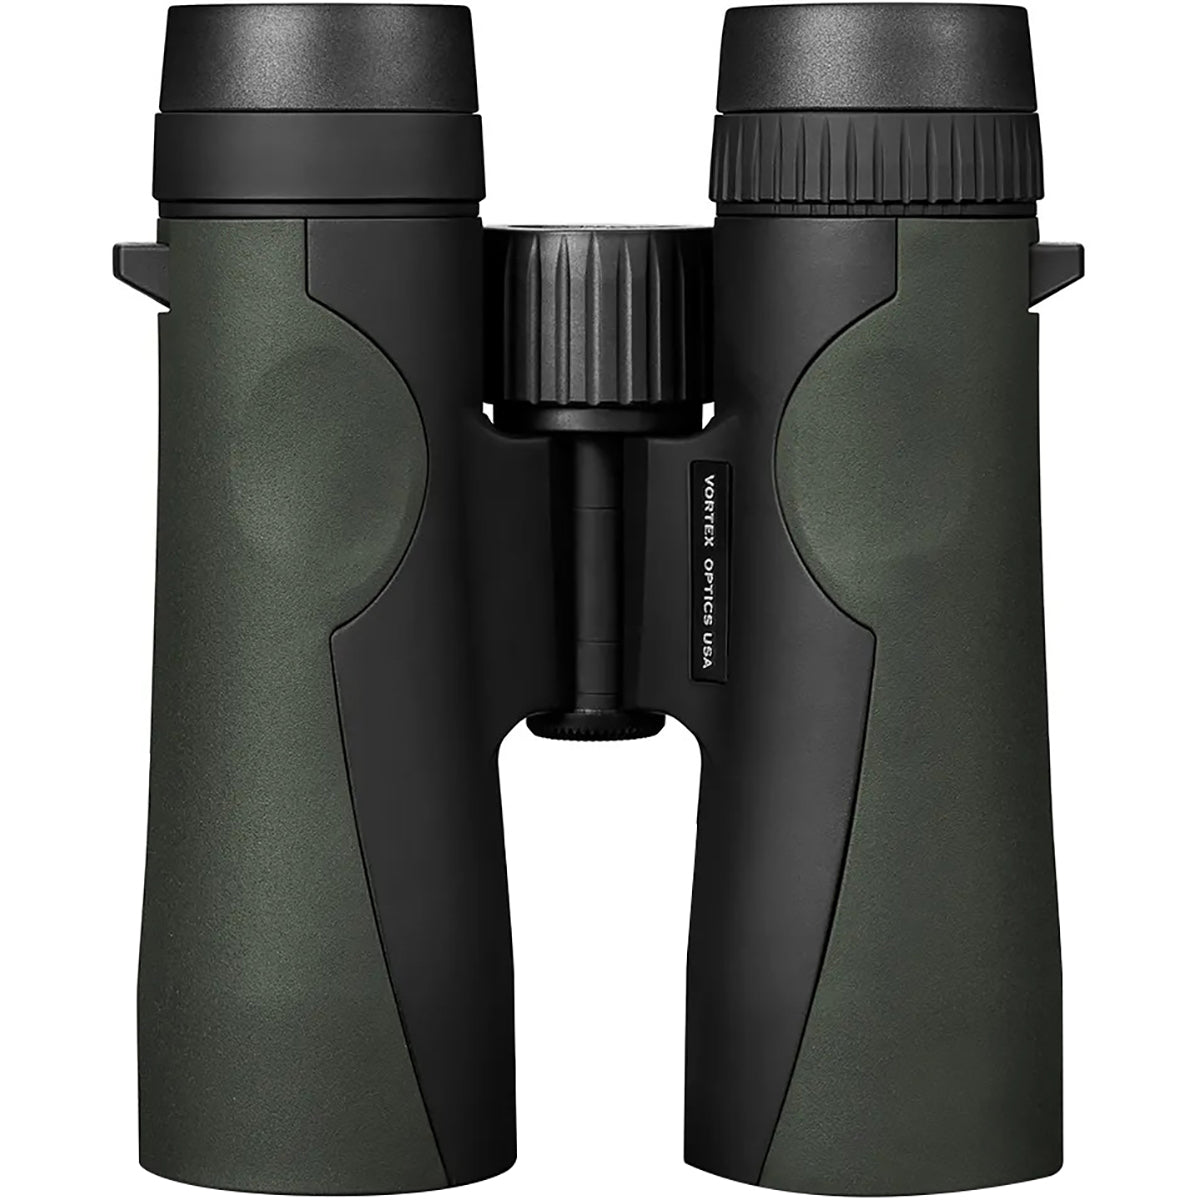 Vortex Optics Crossfire HD Binoculars - 12x50 Vortex